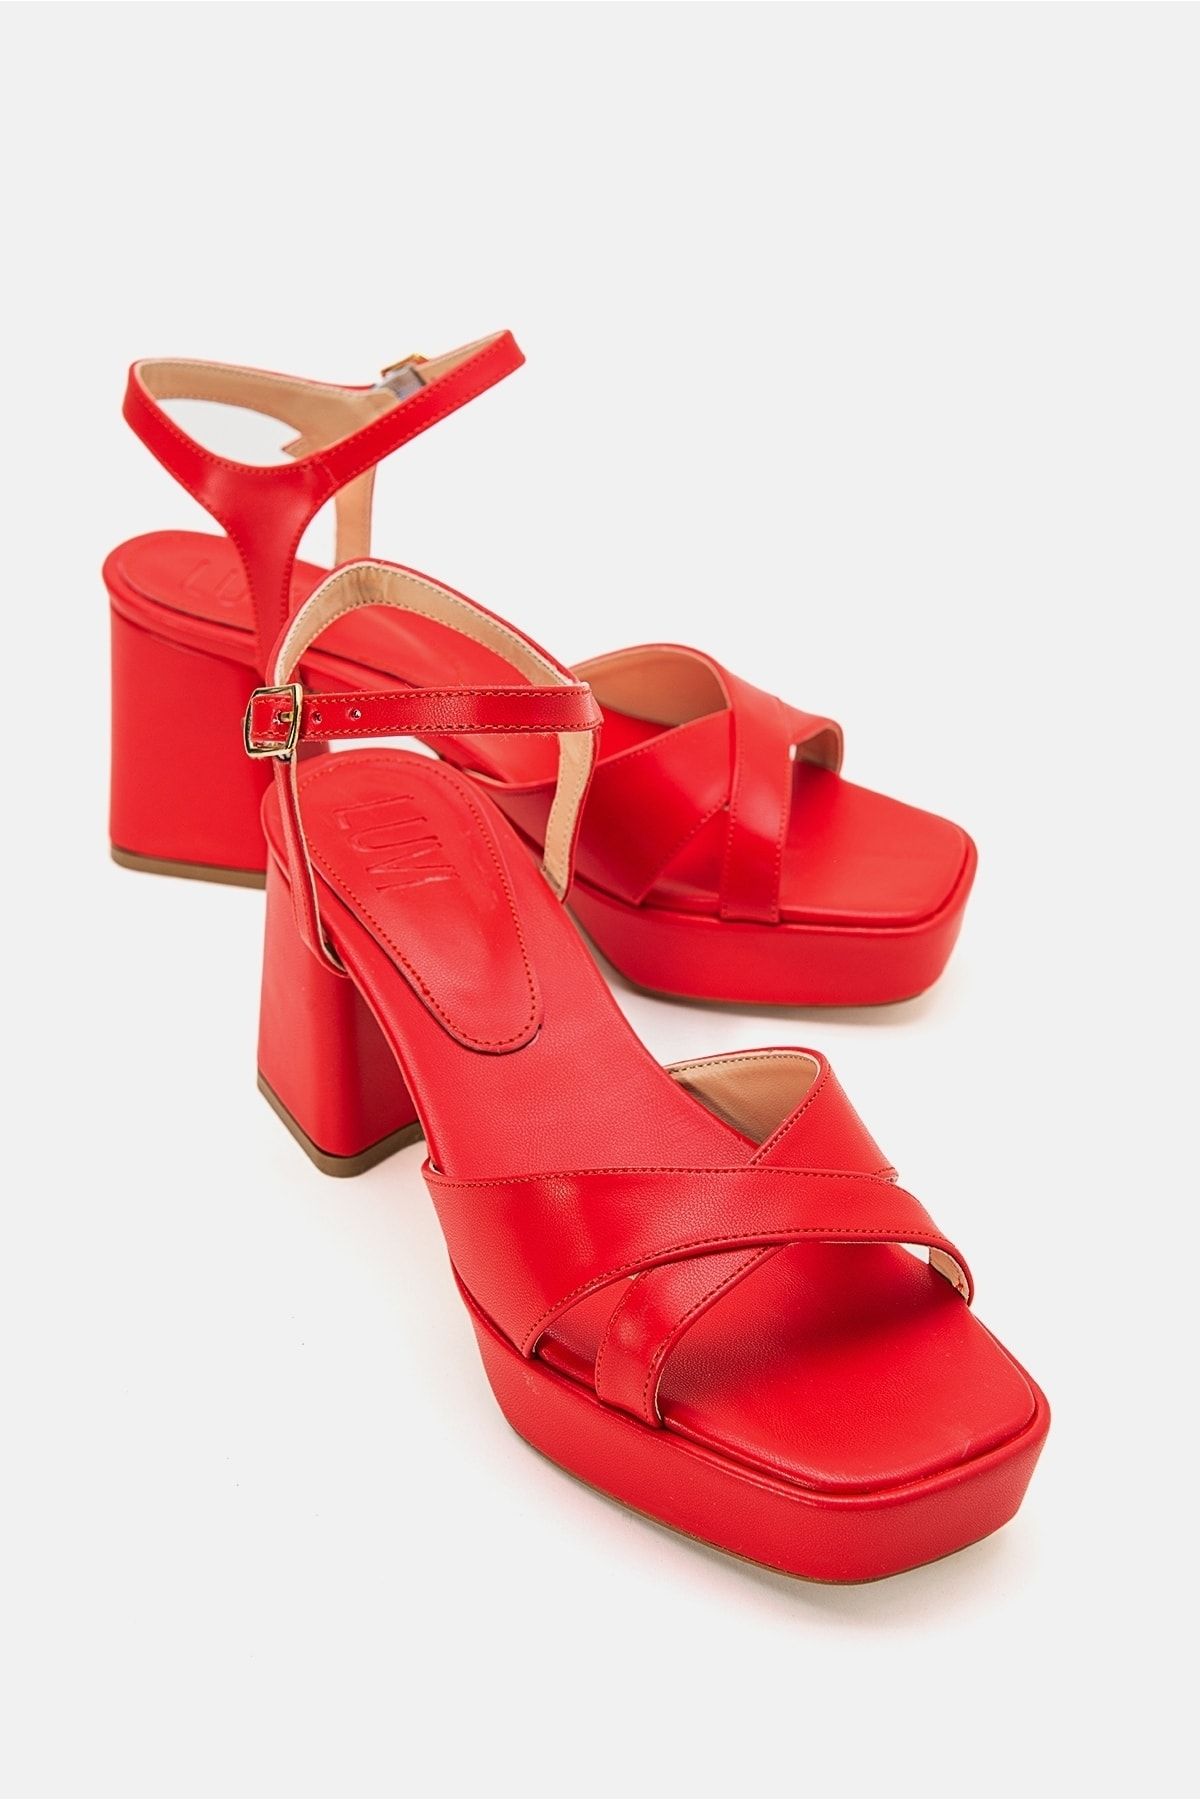 luvishoes Mınus Kırmızı Cilt Kadın Topuklu Ayakkabı